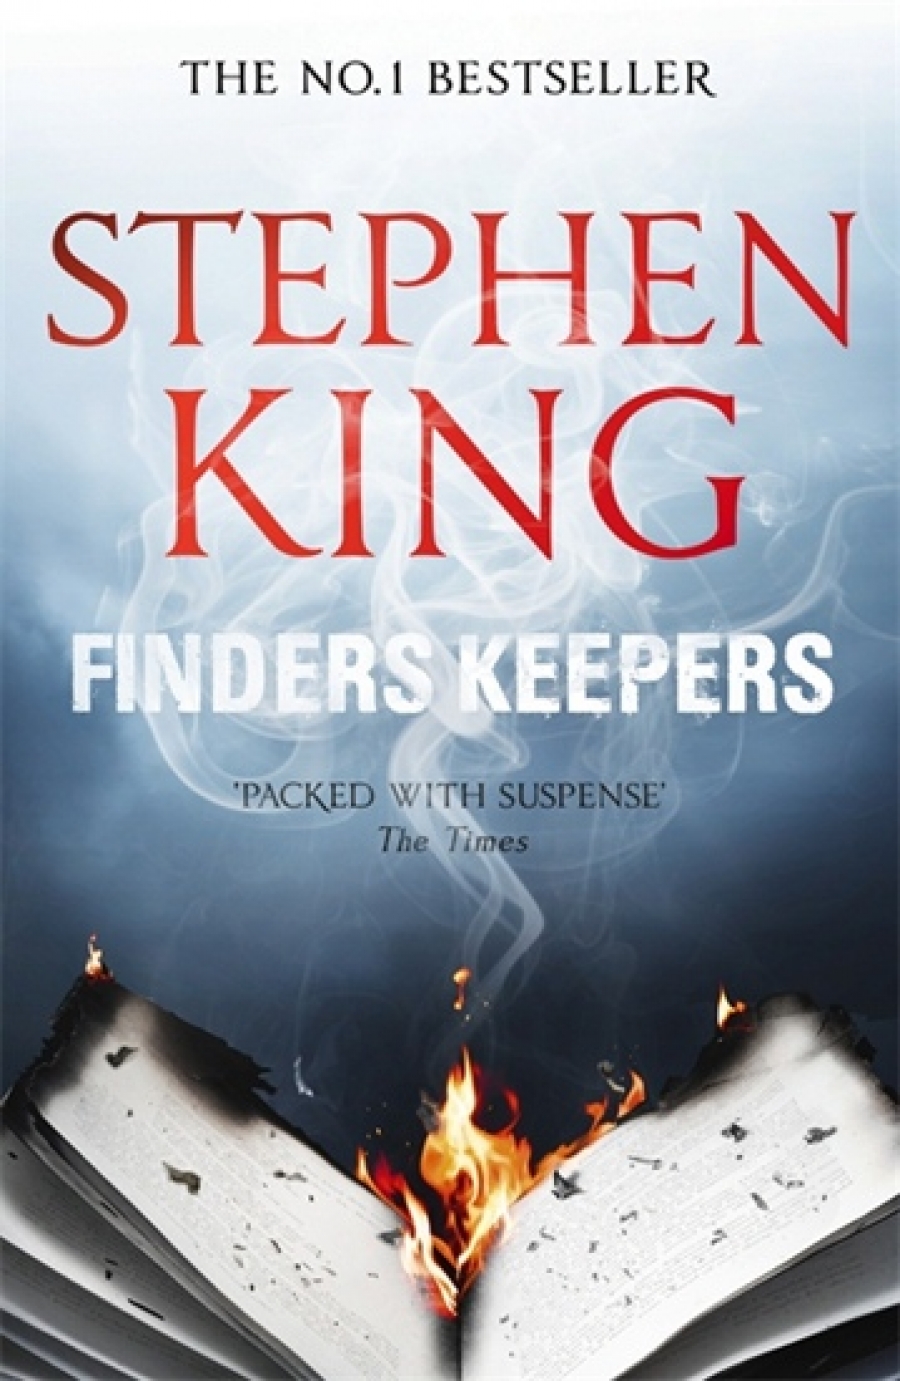 King Stephen Finders Keepers 